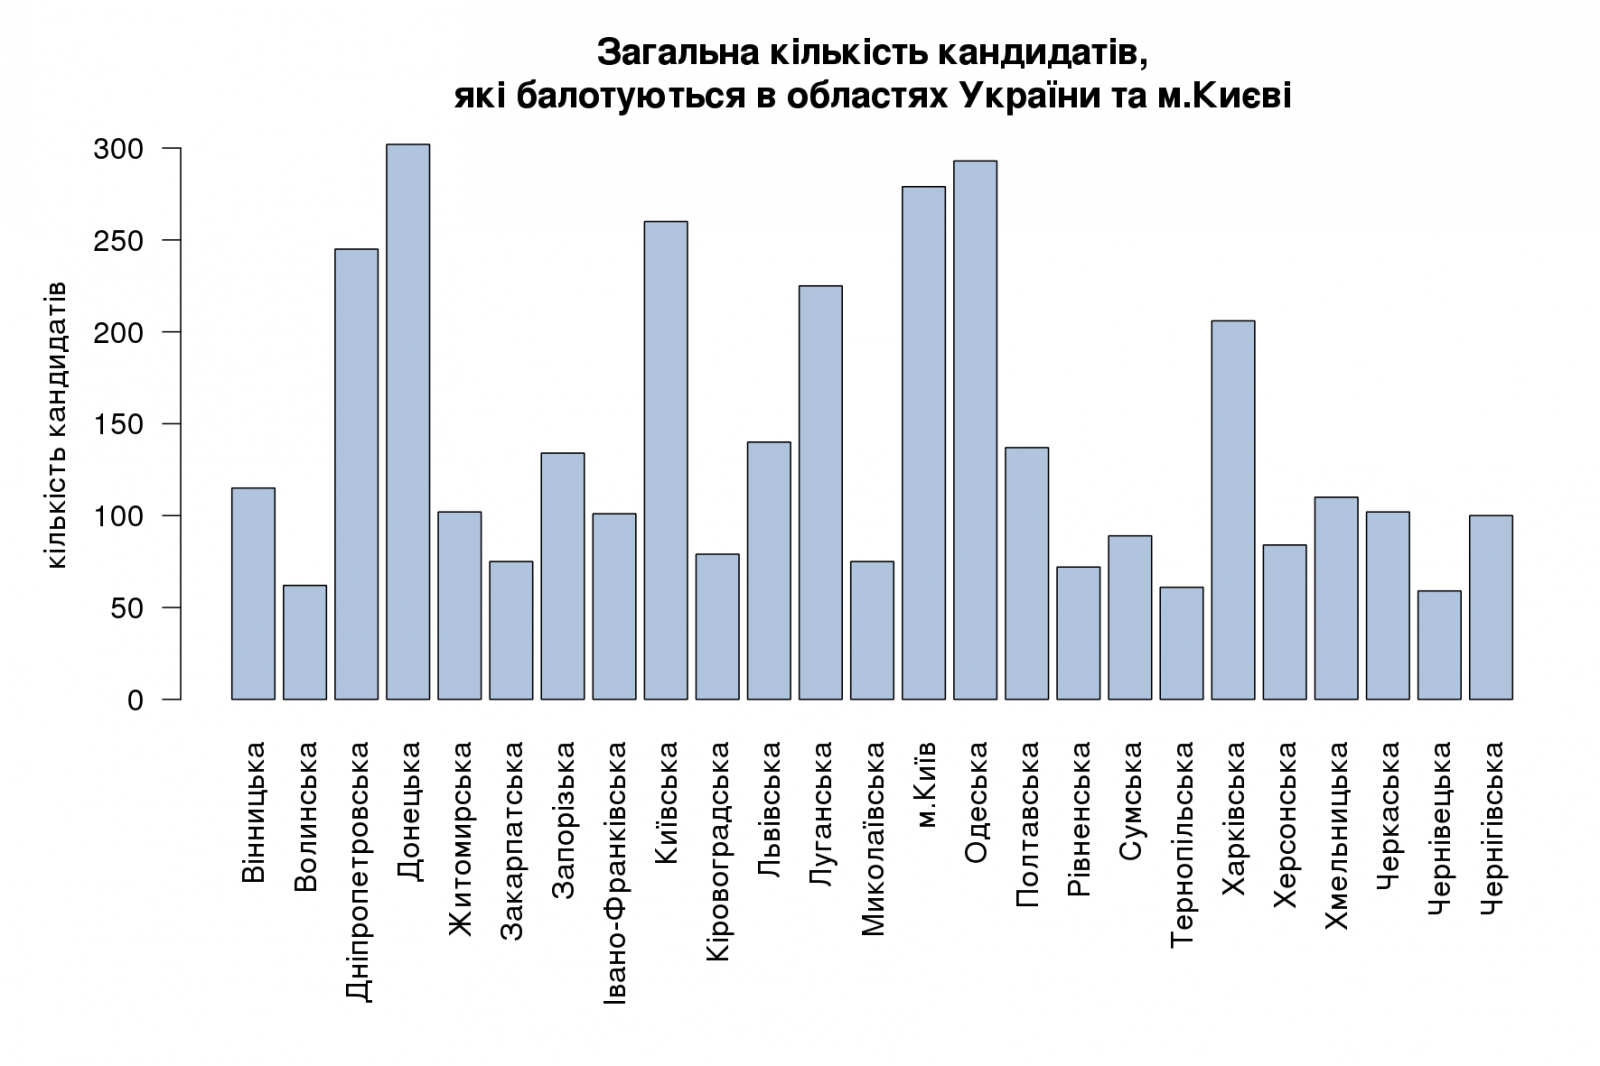 Загальна кількість кандидатів, які балотуються в областях України та м.Києві